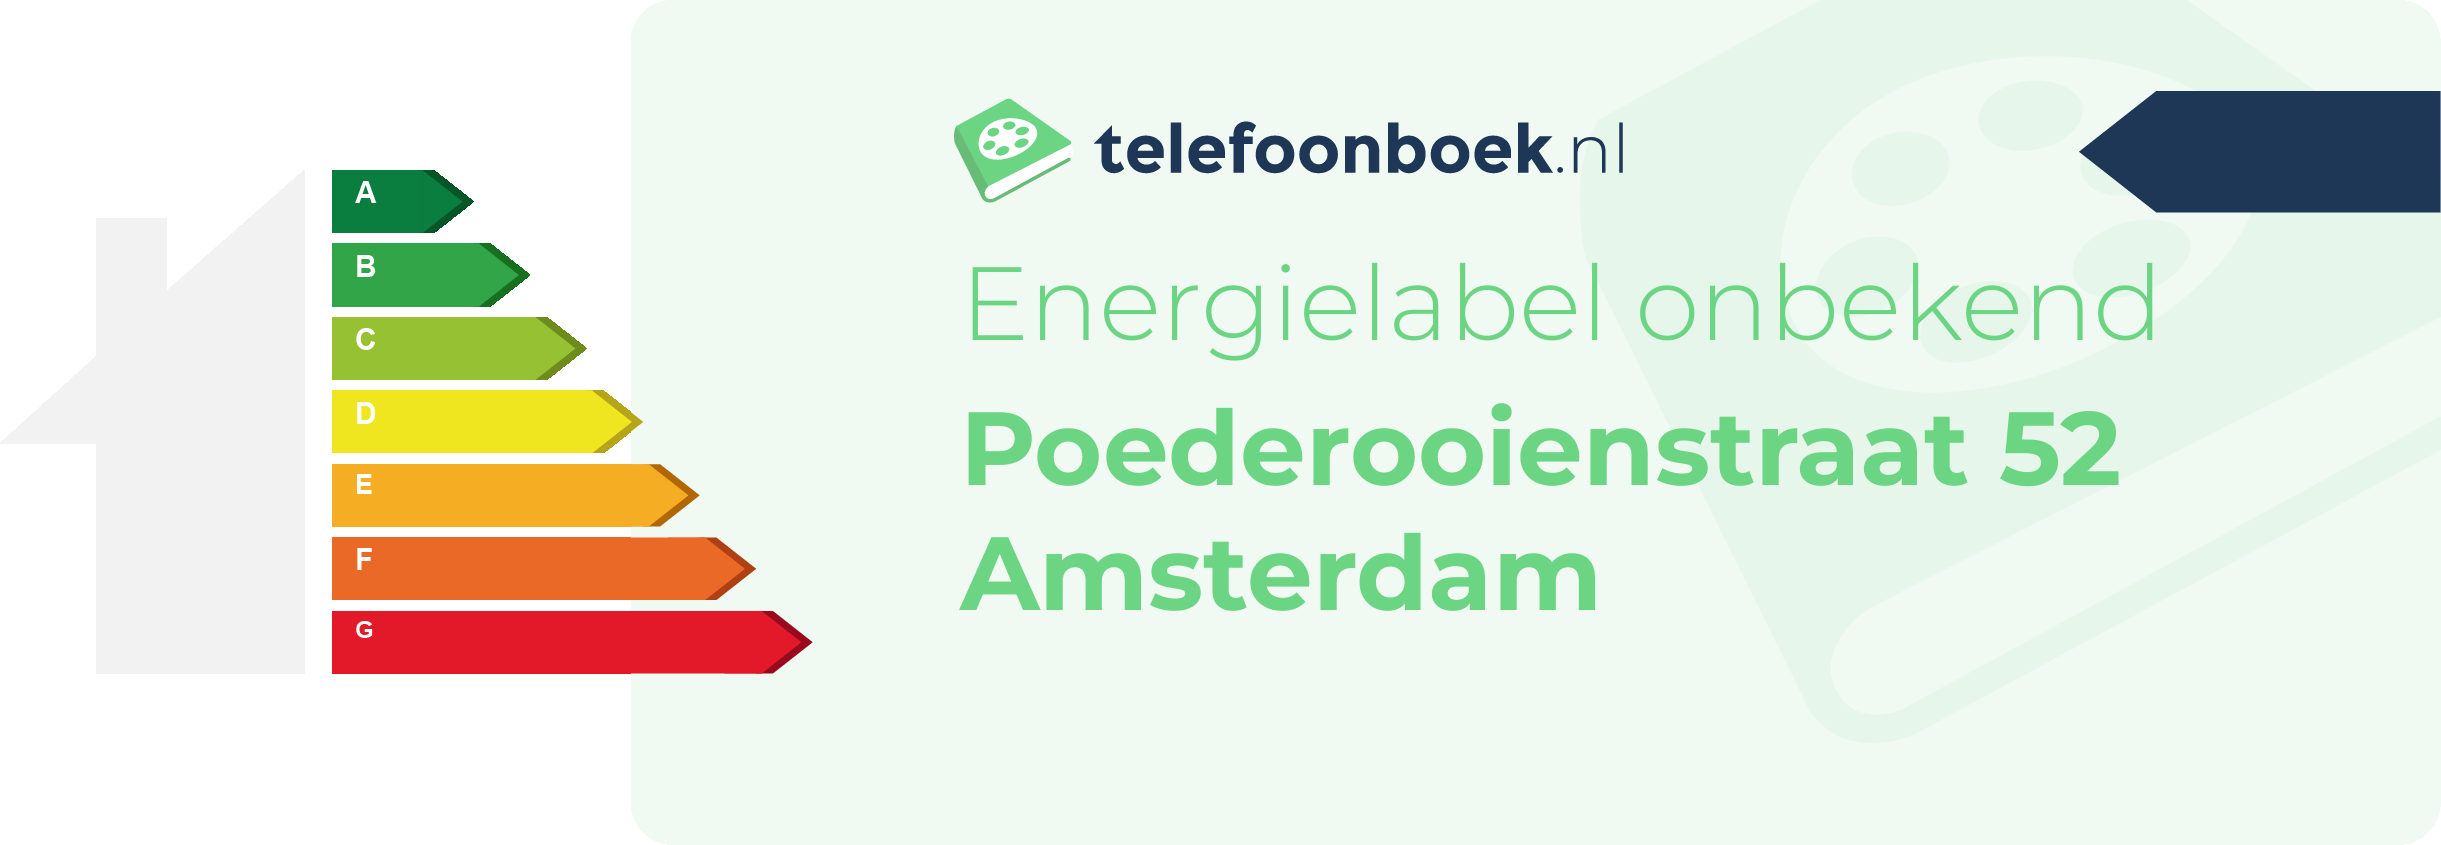 Energielabel Poederooienstraat 52 Amsterdam